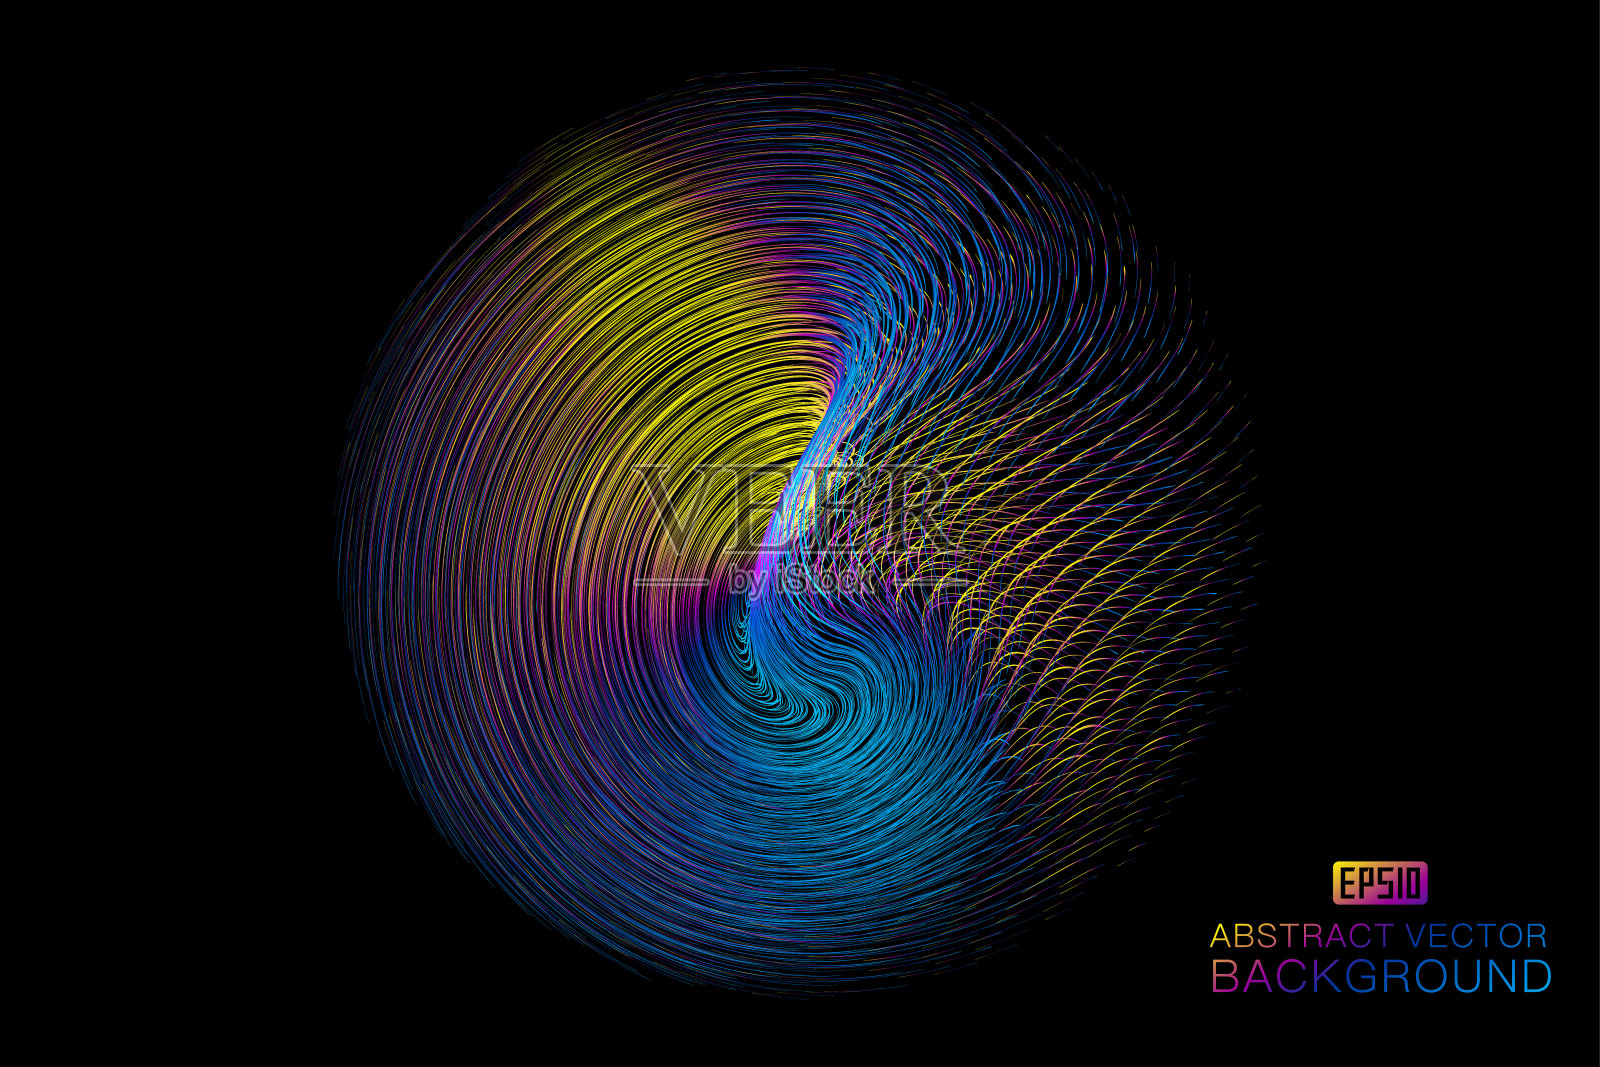 色彩斑斓的曲线构成发光的螺旋抽象纹理图案背景插画图片素材